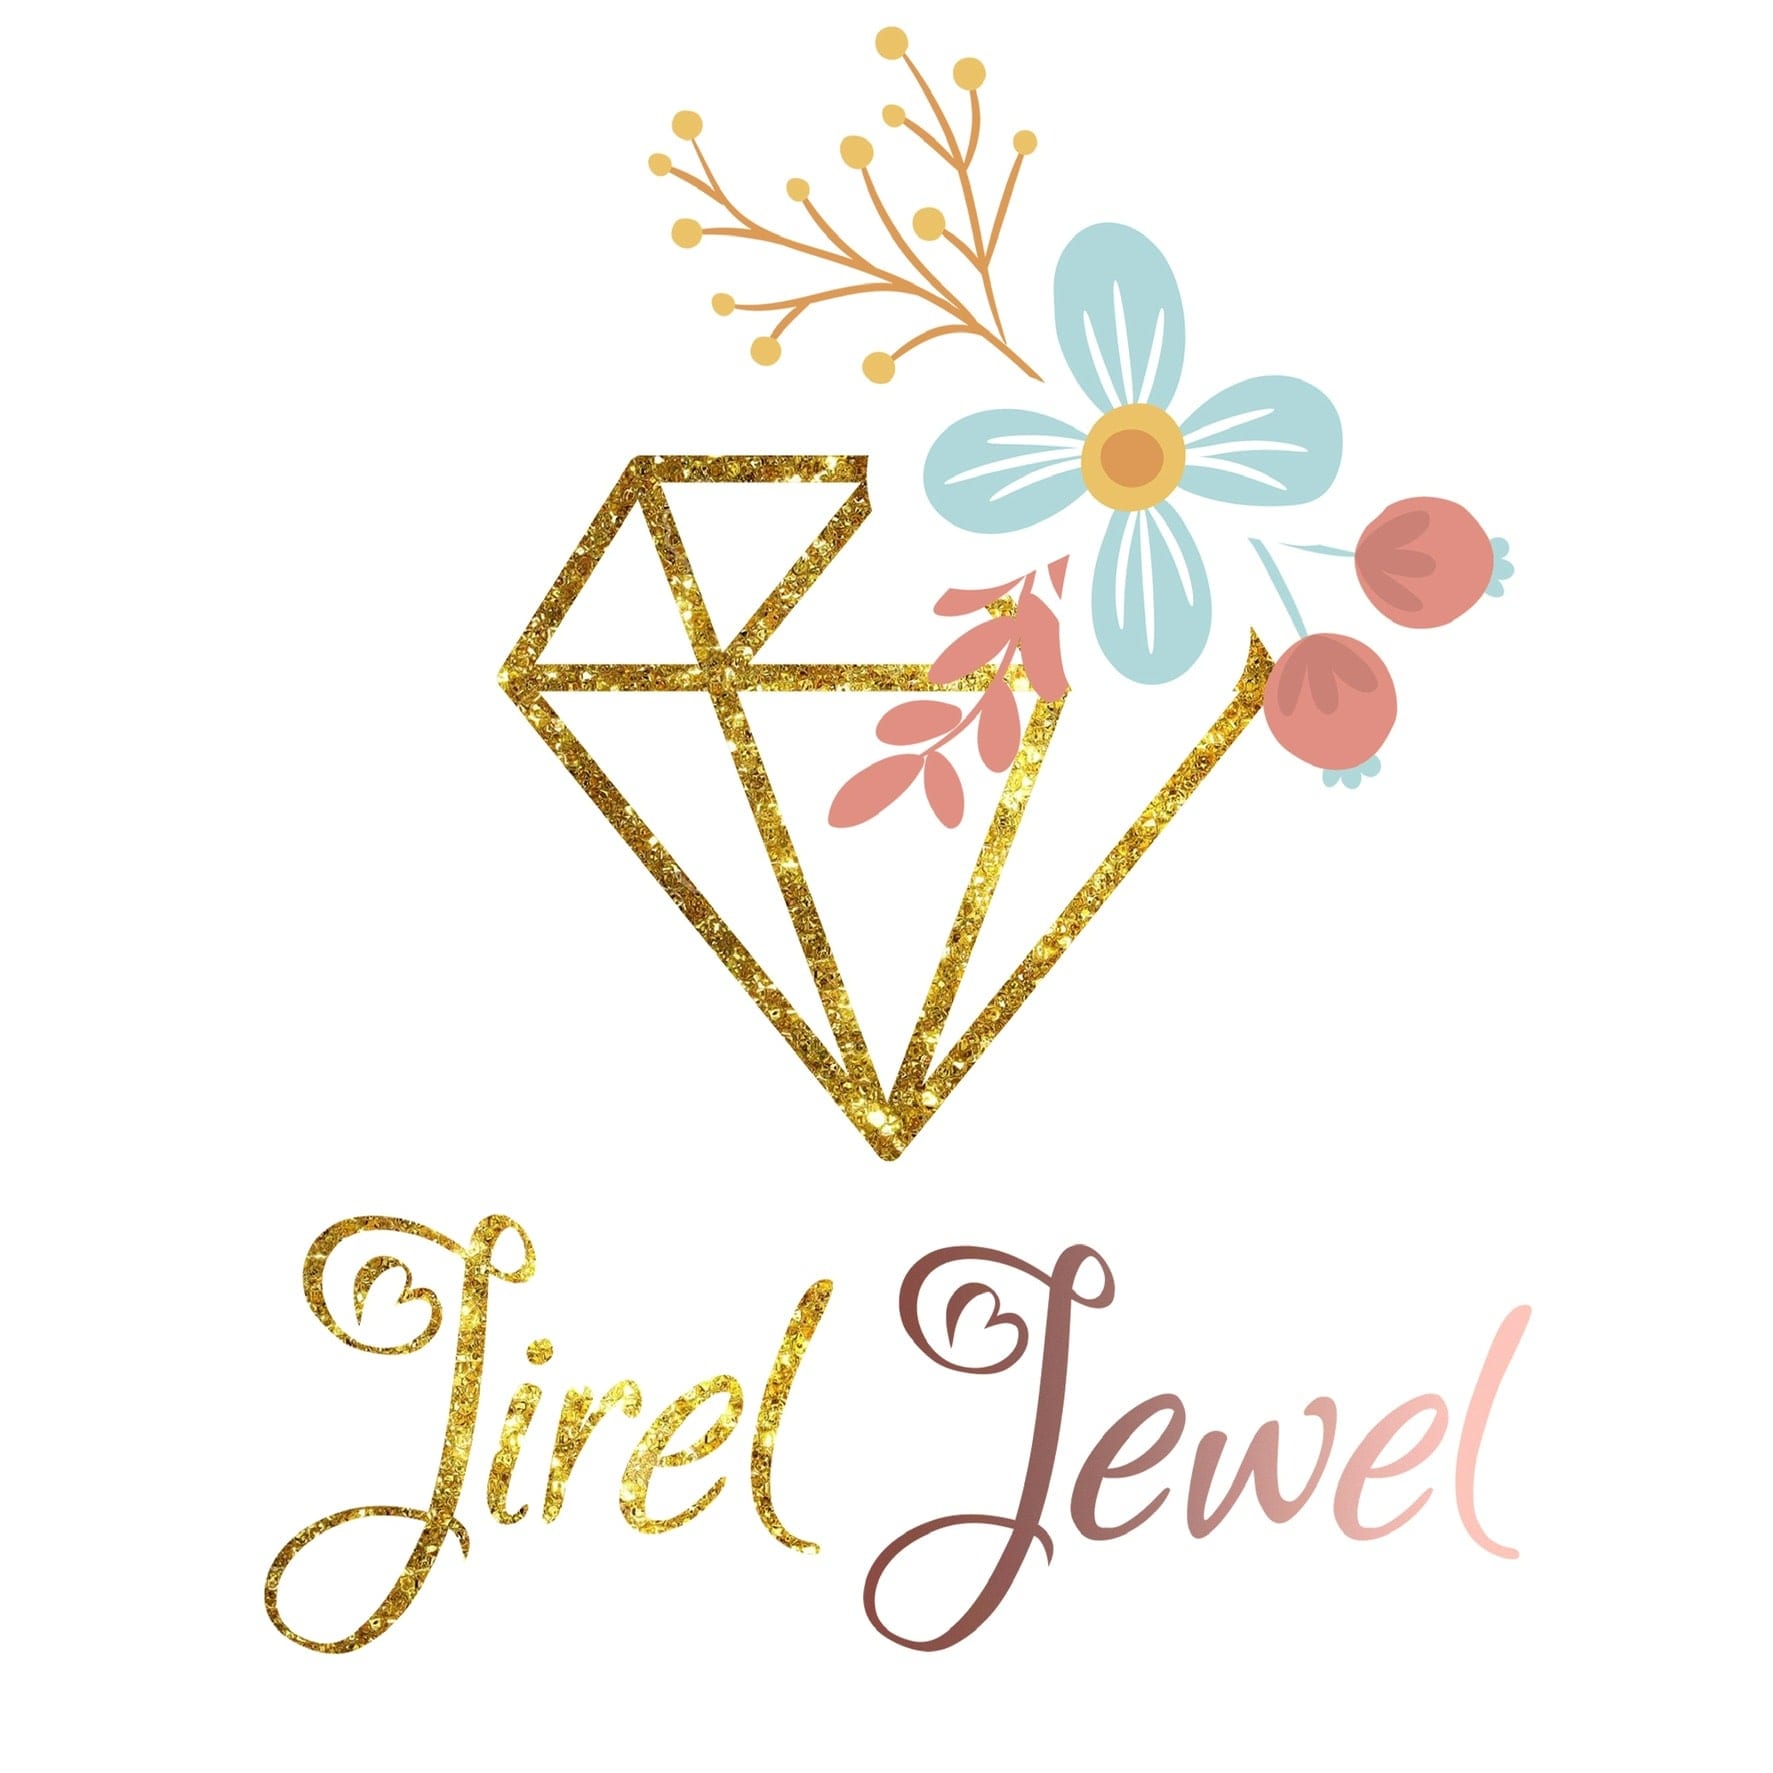 Jirel Jewel